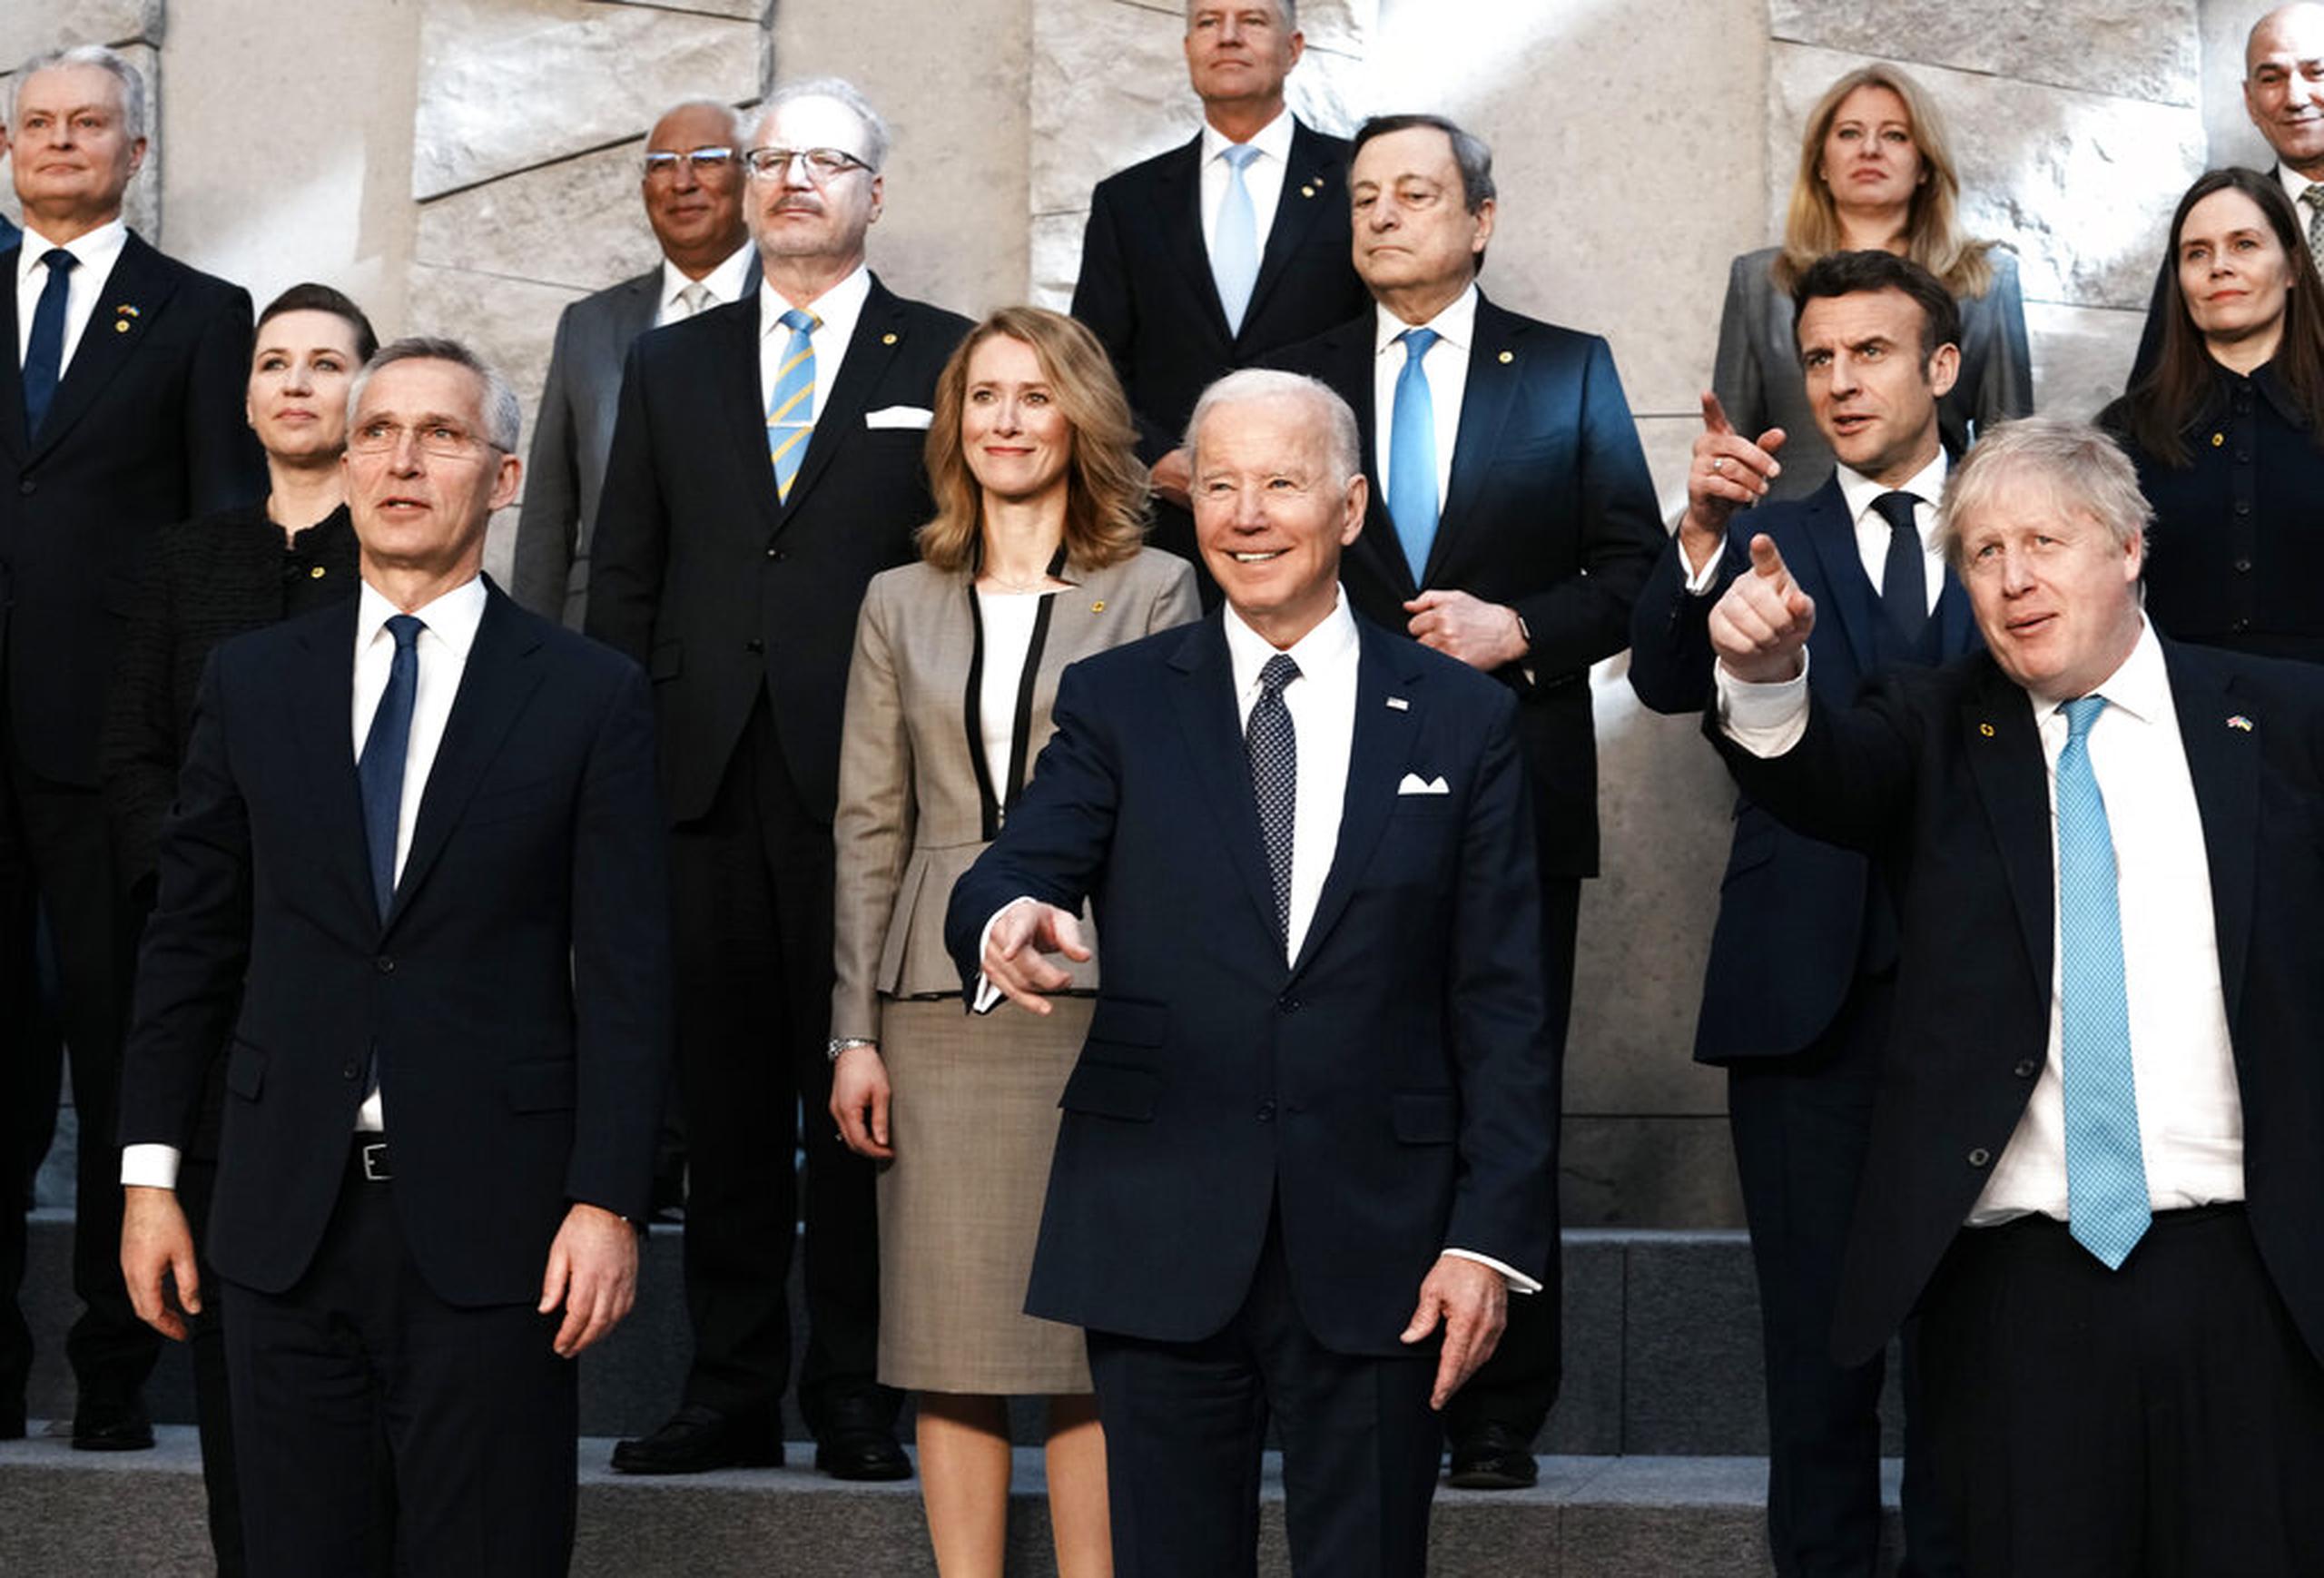 El secretario general de la OTAN, Jens Stoltenberg; el presidente de Estados Unidos, Joe Biden; el presidente de Francia, Emmanuel Macron; y el primer ministro de Reino Unido, Boris Johnson, posan durante una foto grupal durante la cumbre extraordinaria de la OTAN el 24 de marzo de 2022 en Bruselas, Bélgica.